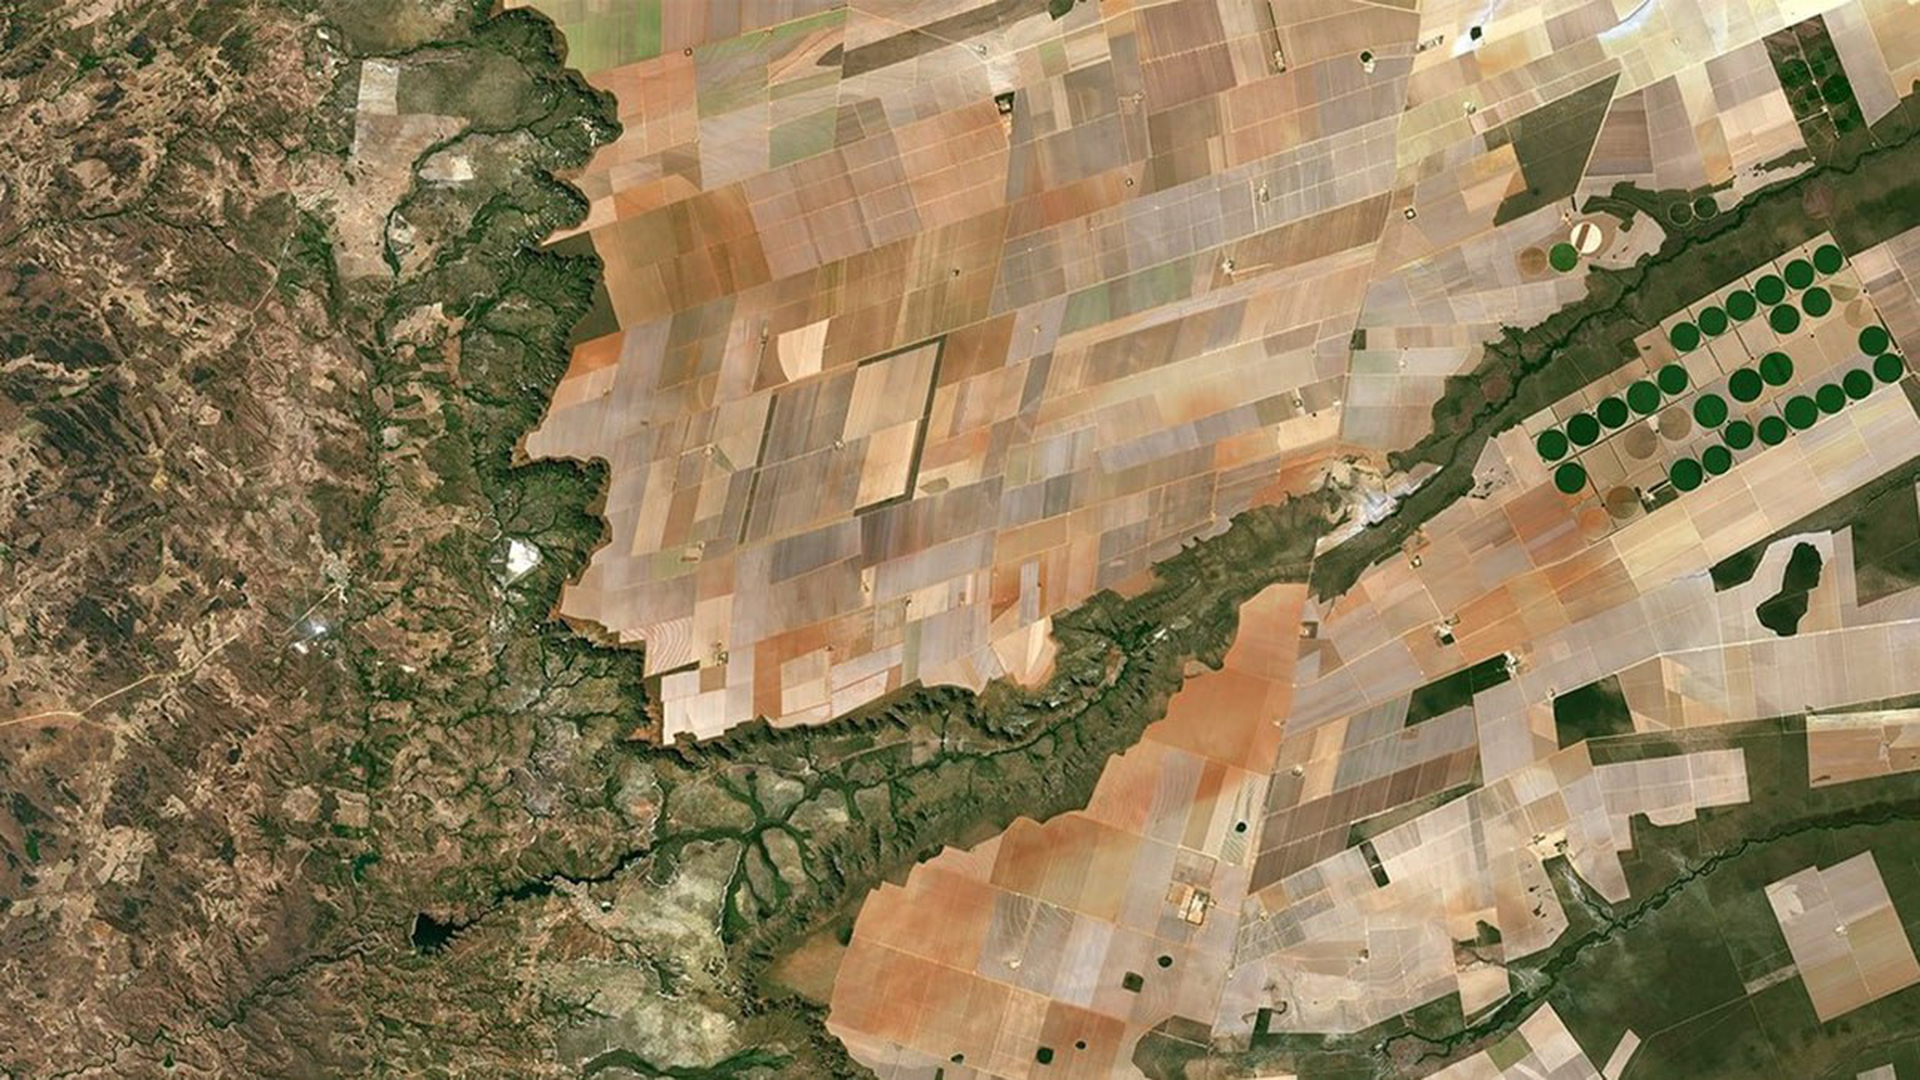 Foto satellitare di campi coltivati e corsi d'acqua